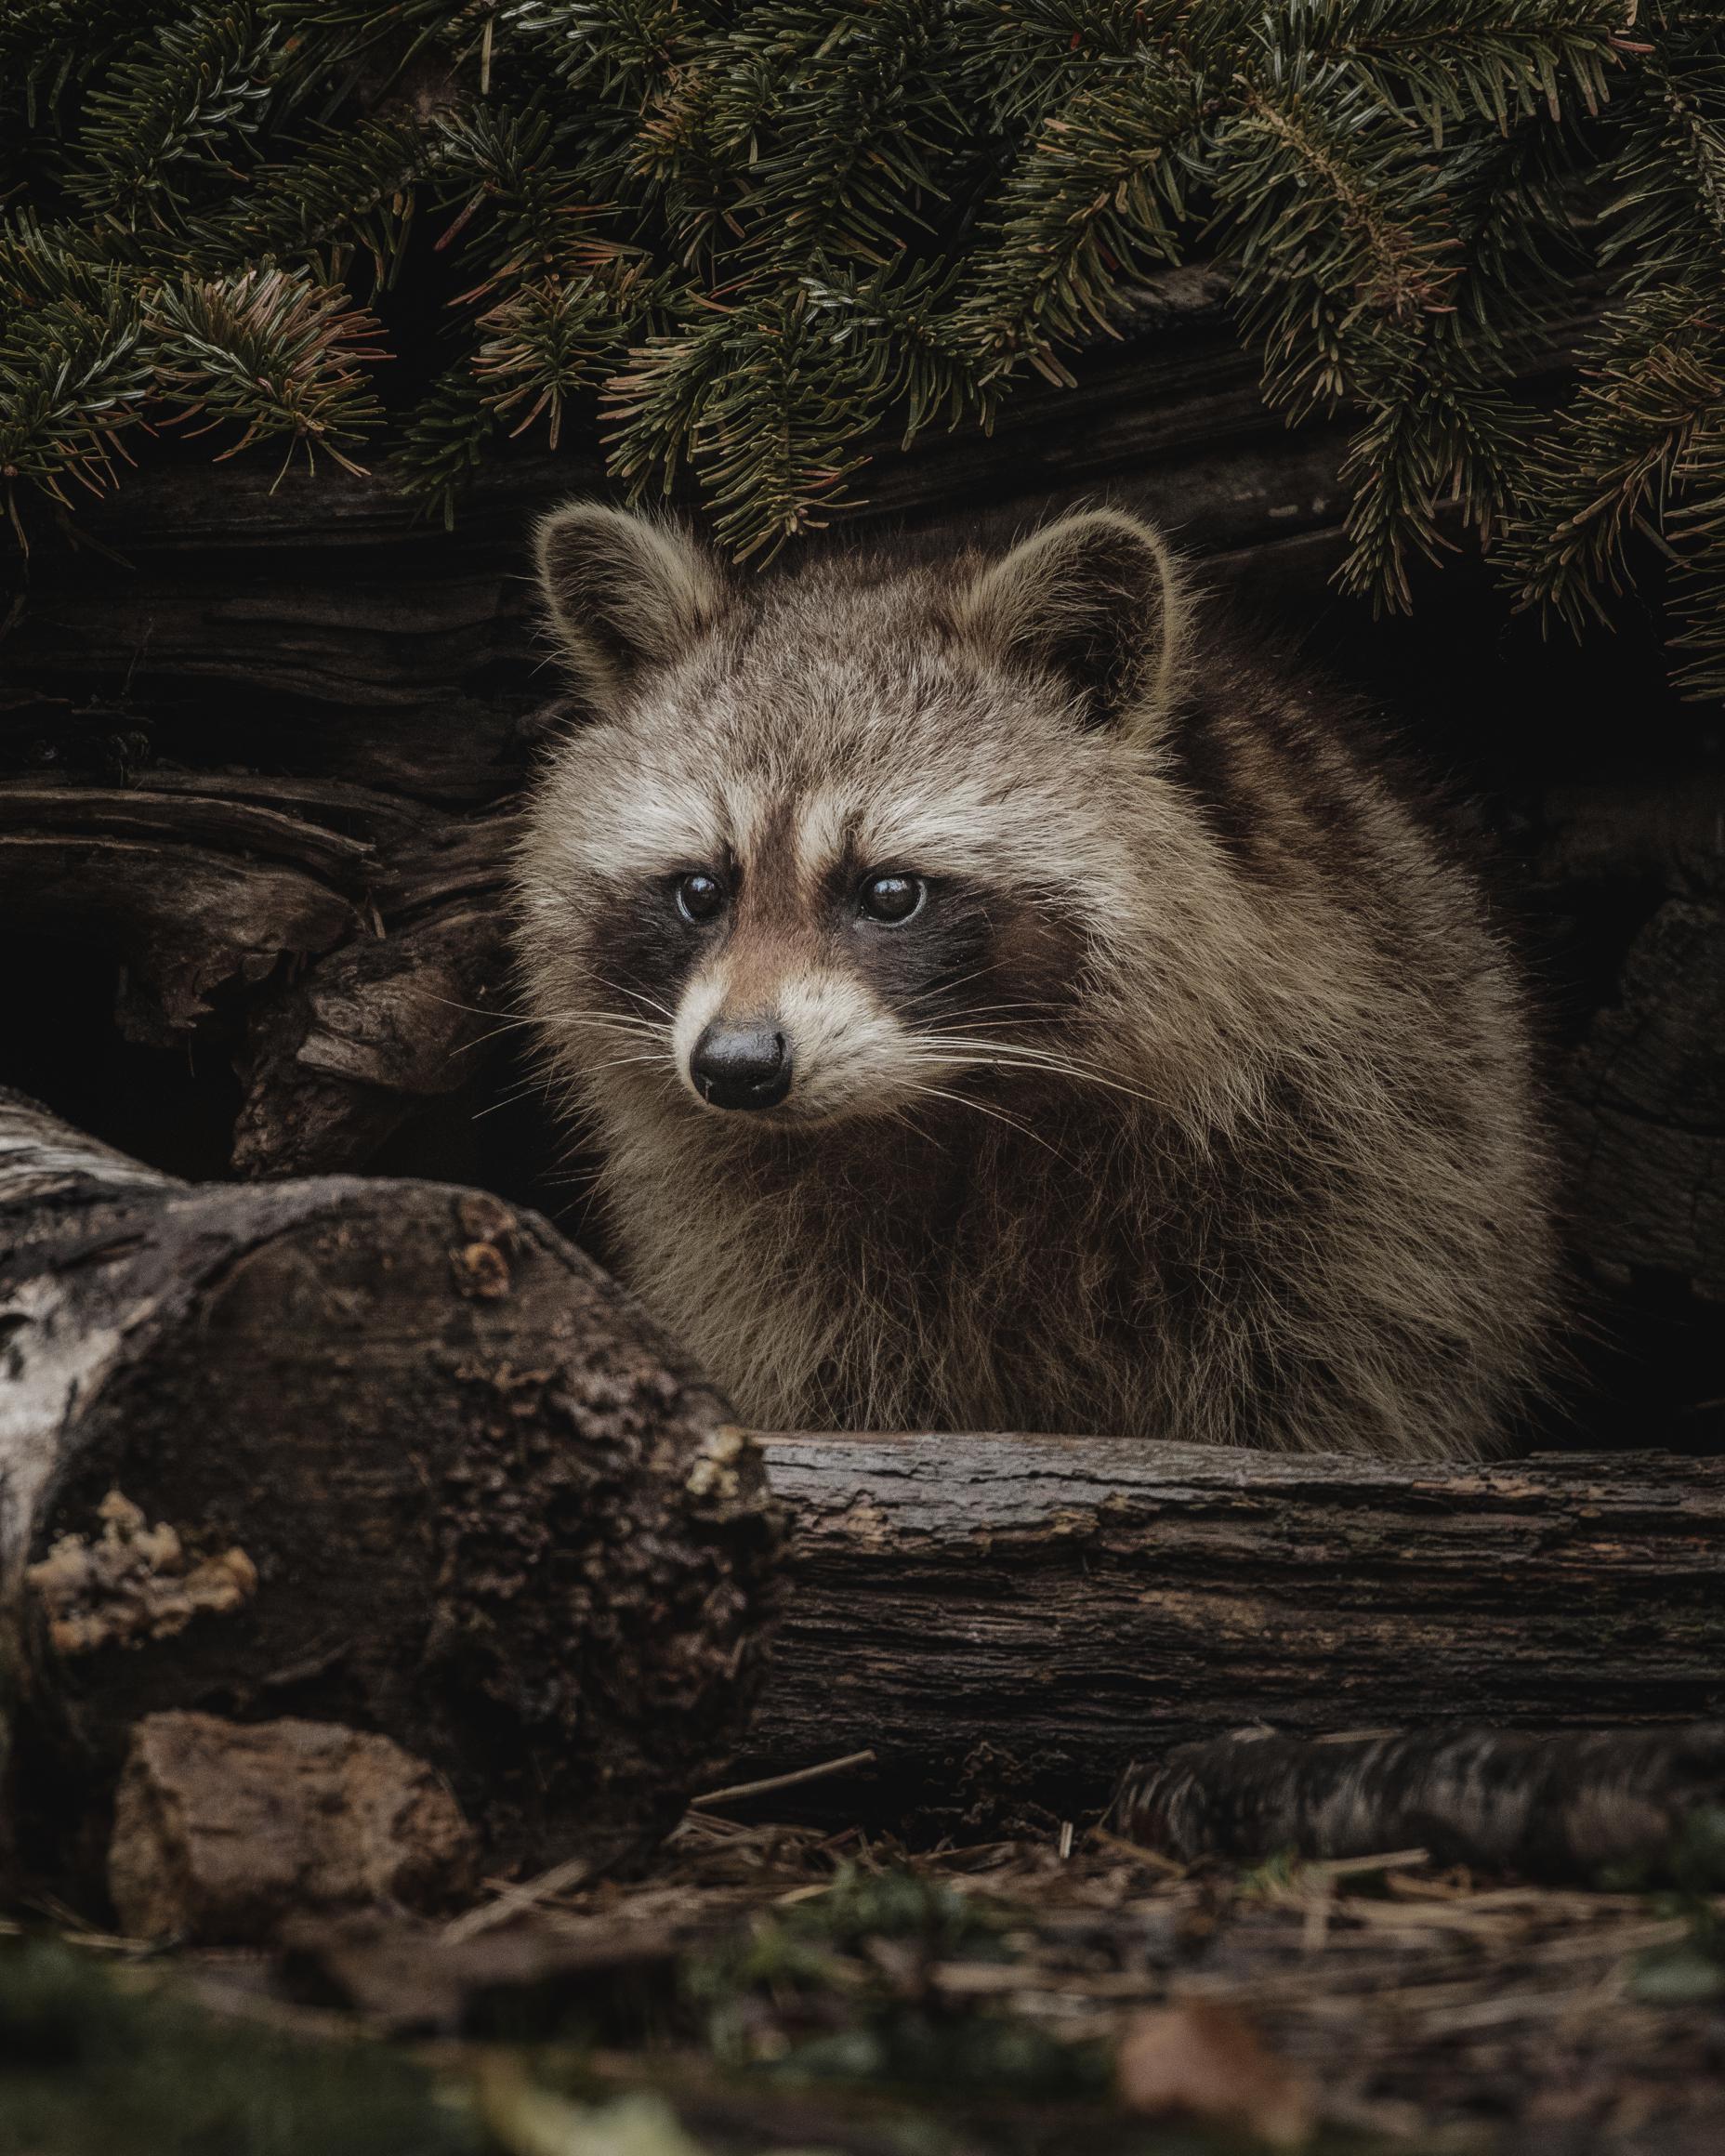 Raccoon diet and habitat